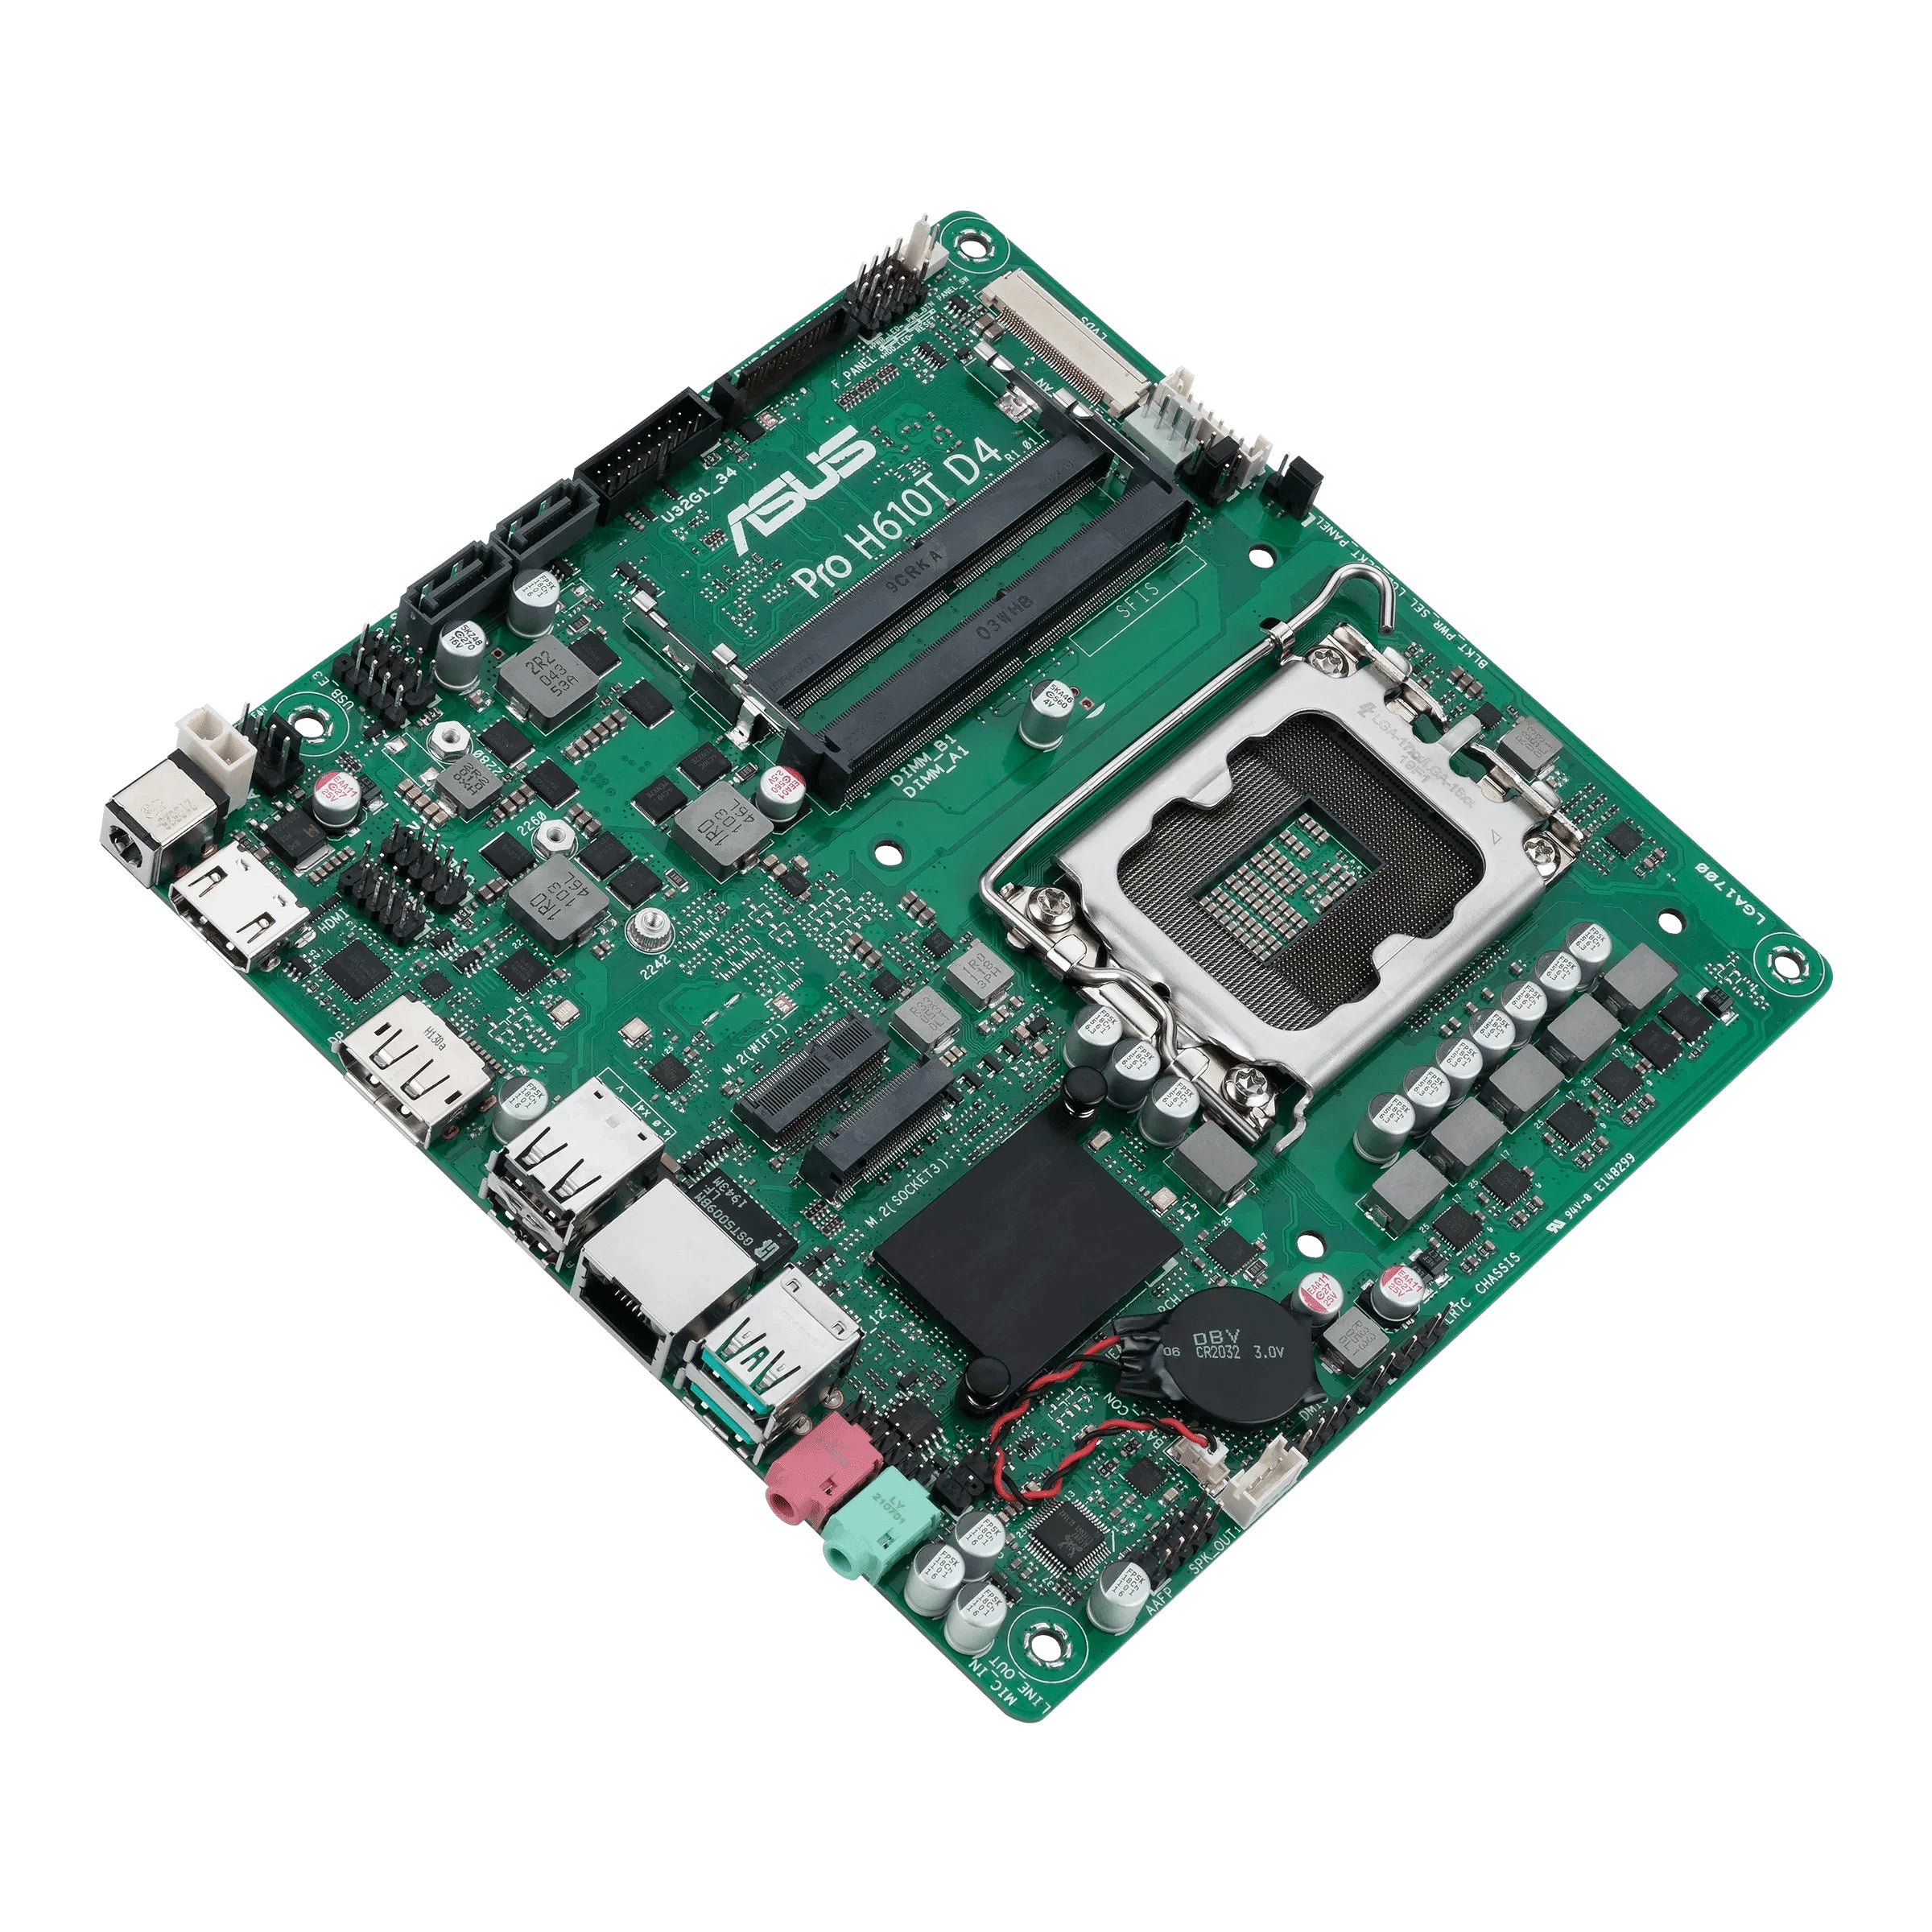 ASUS PRO H610T D4-CSM (Thin mini-ITX, H610, LGA 1700, DDR4)